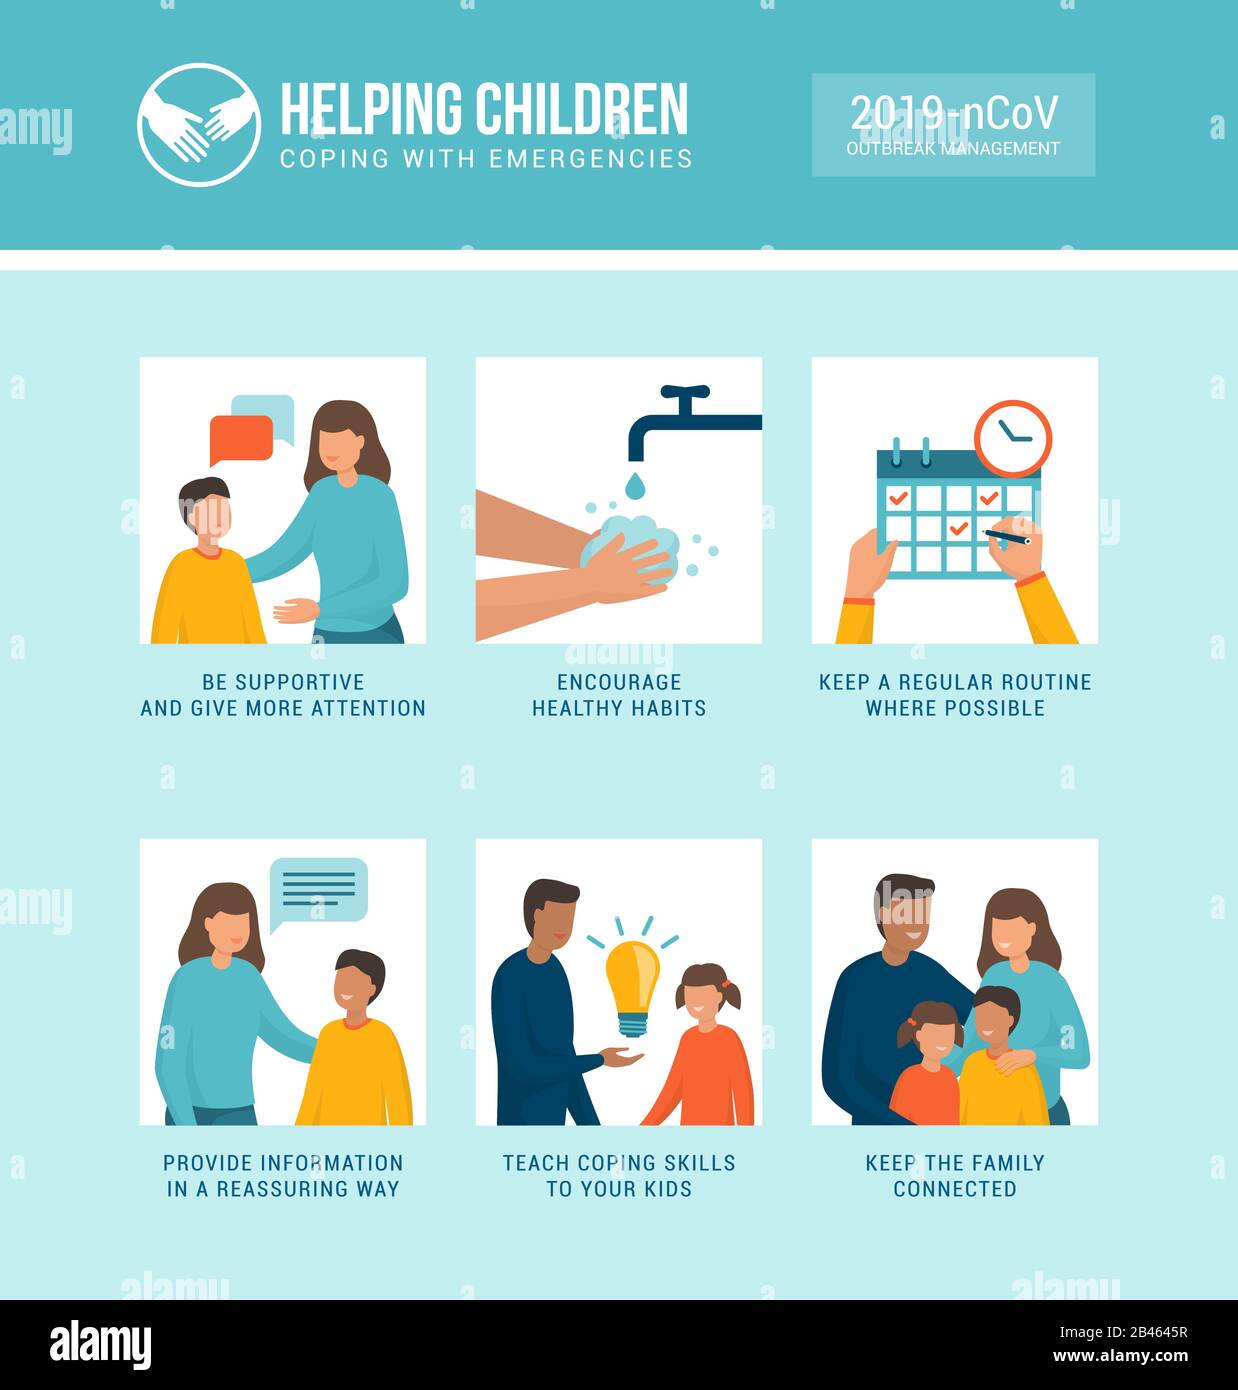 Infografik zum Covid-19-Outbreak-Management hilft Kindern und Familien bei der Bewältigung von Stress in Notfällen Stock Vektor